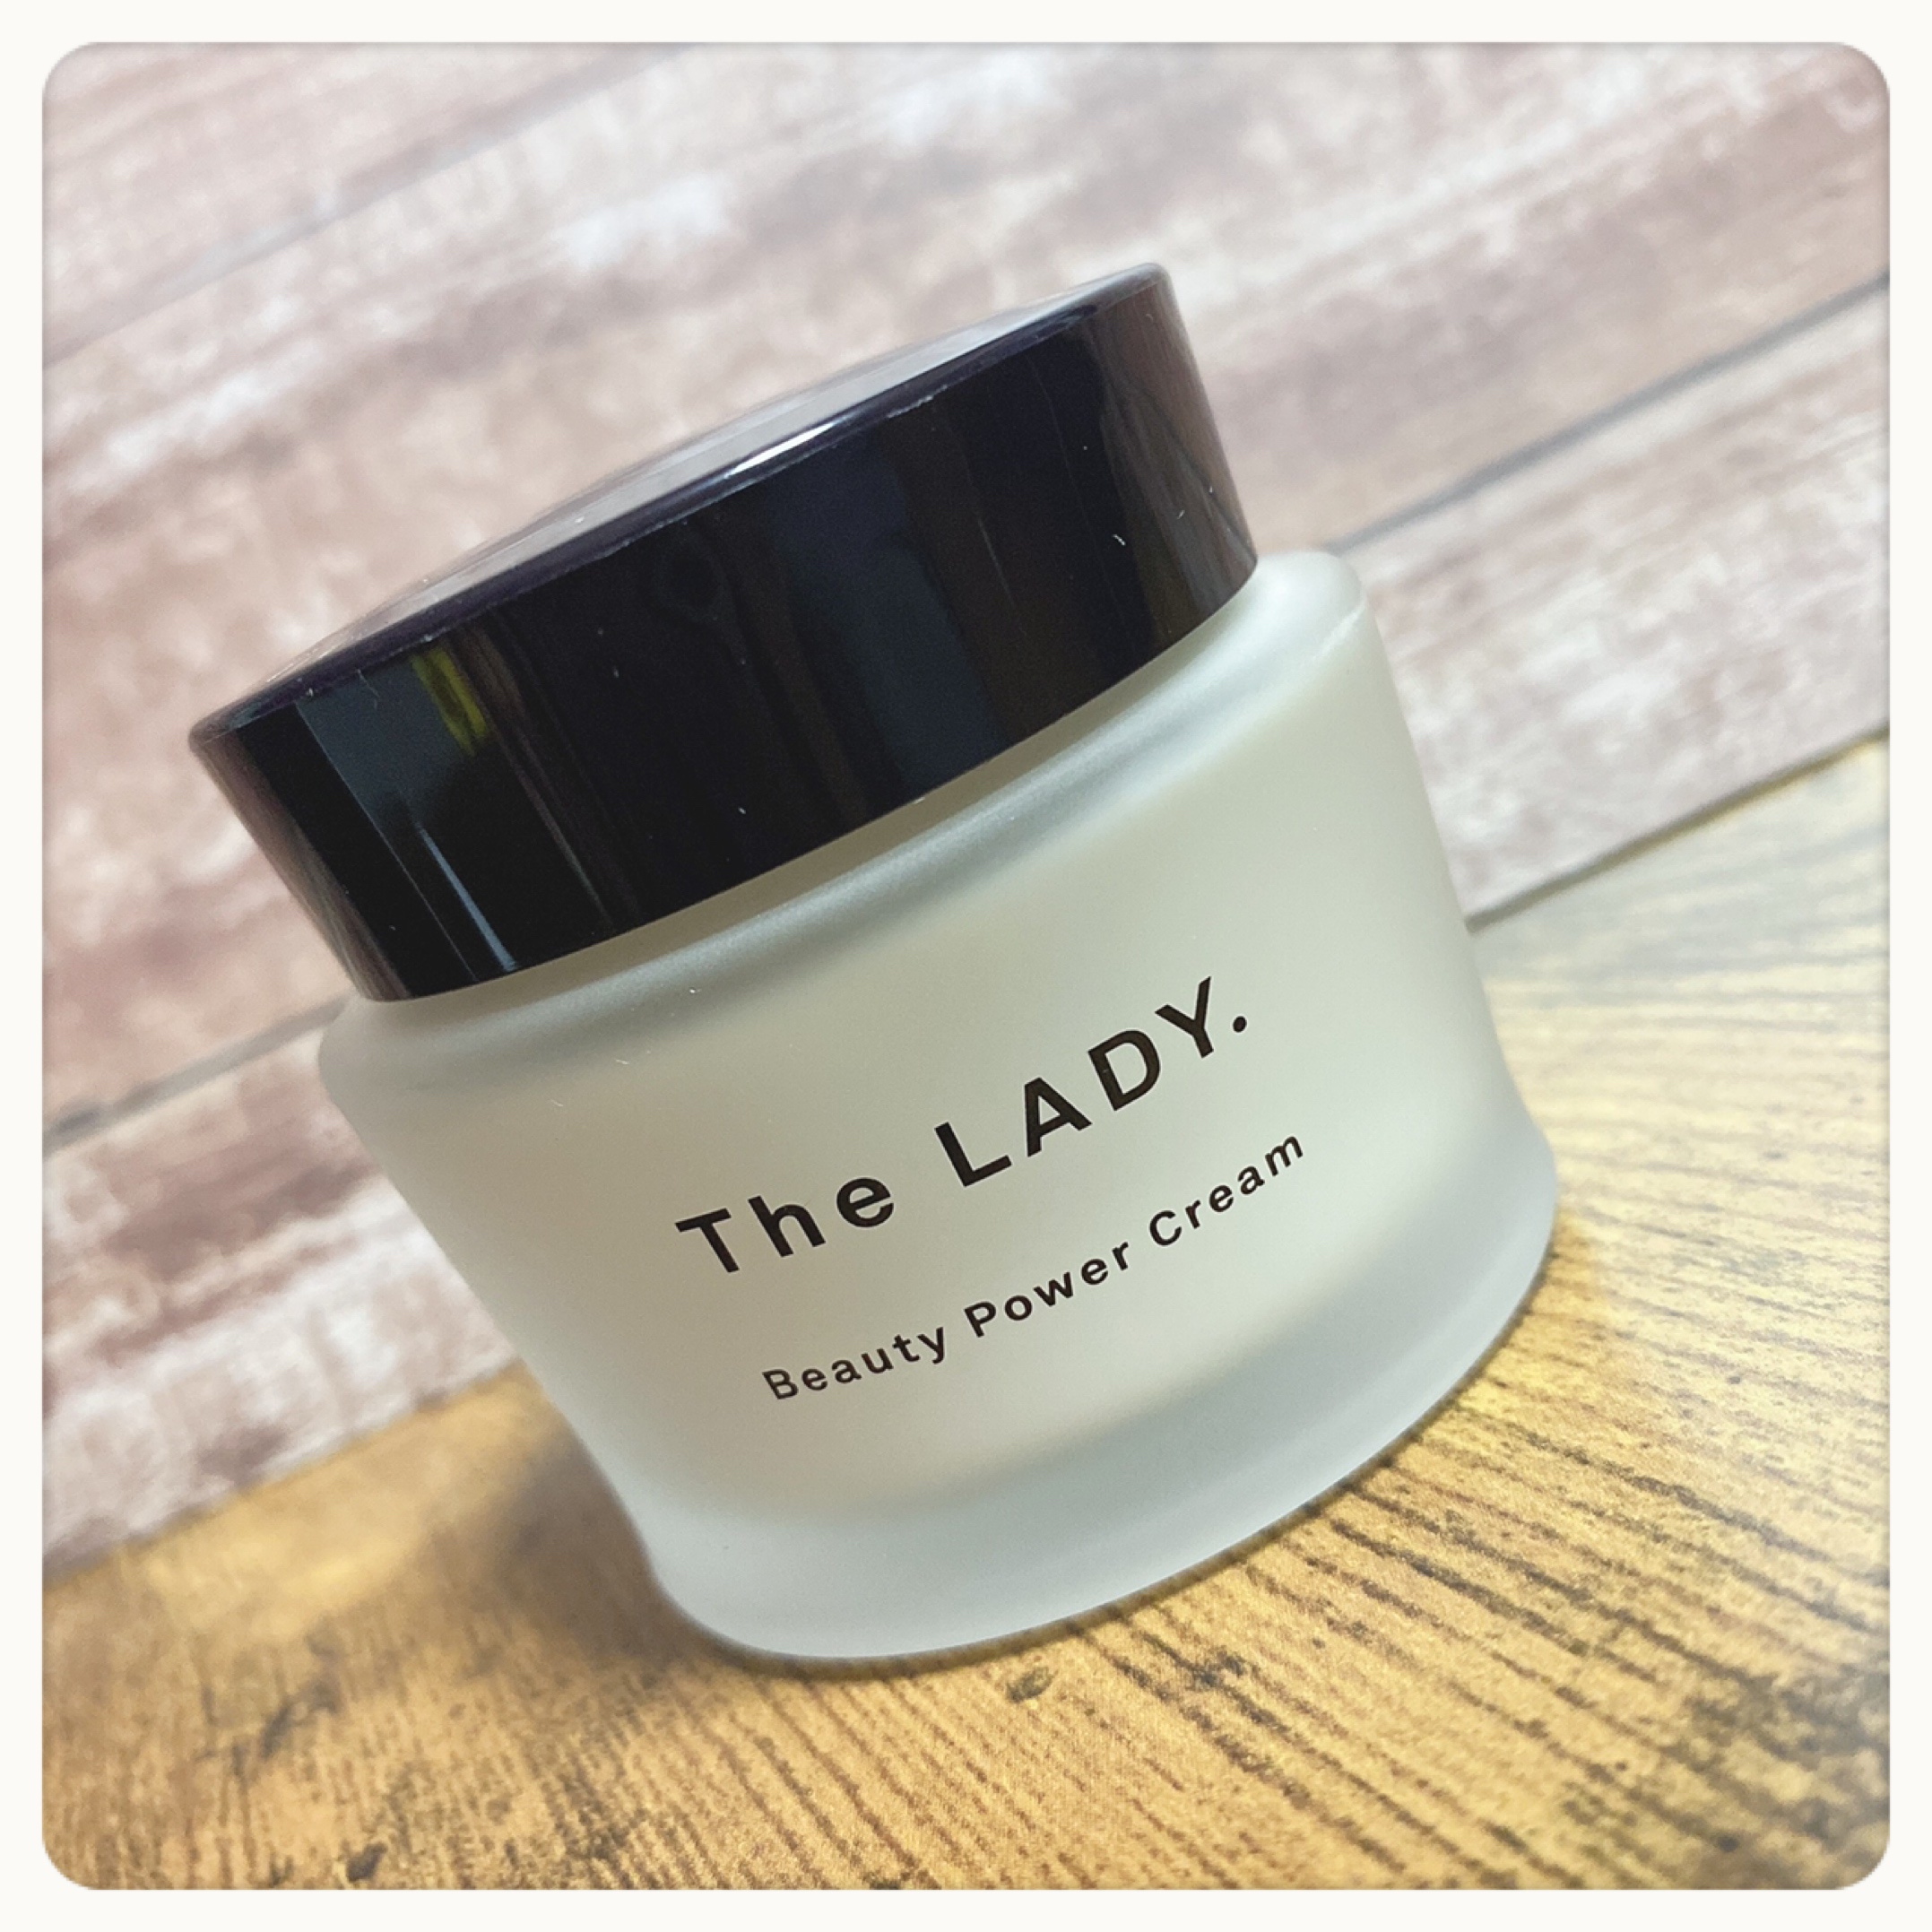 The LADY. / ビューティ パワー クリームの公式商品情報｜美容・化粧品 